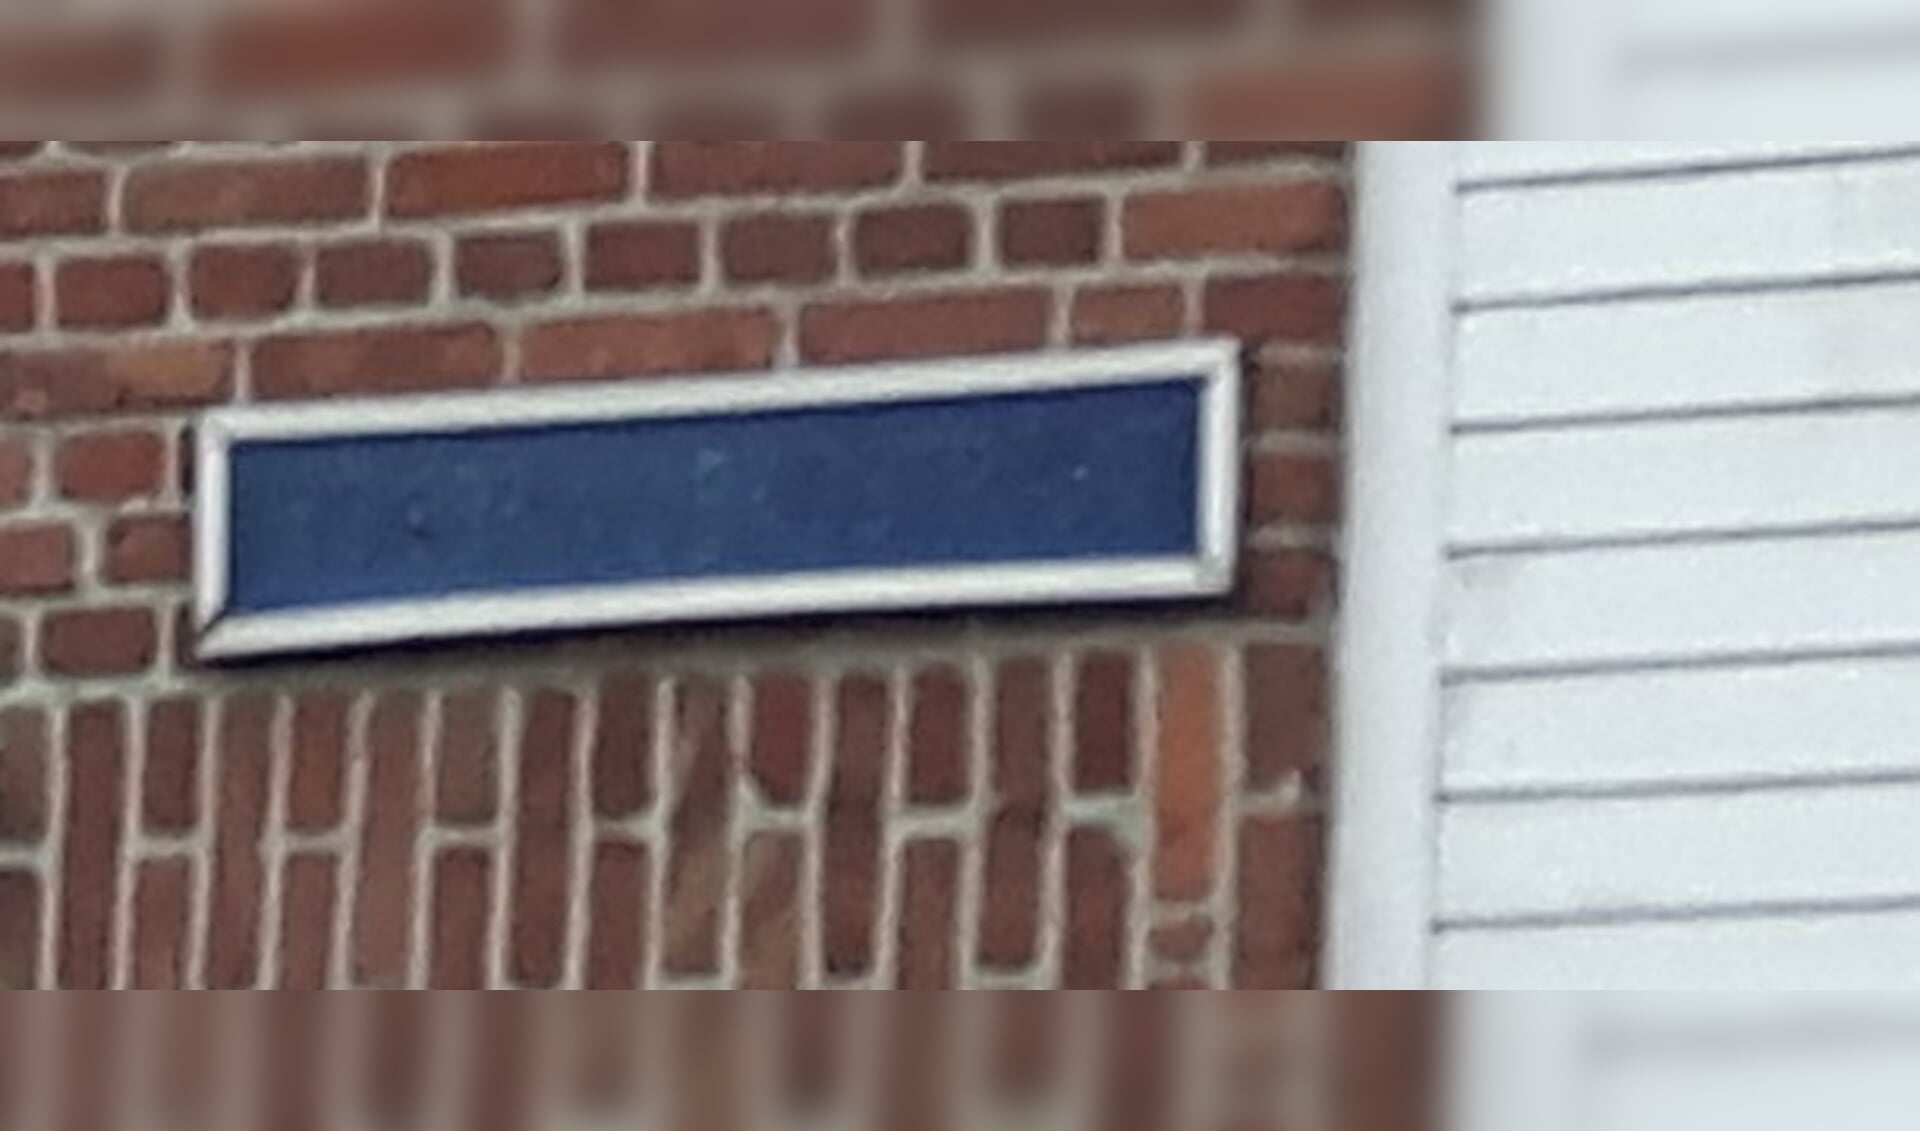 Op 1 maart worden vijf straten in het centrum tijdelijk omgedoopt met namen van vrouwen die belangrijk zijn geweest voor Haarlem